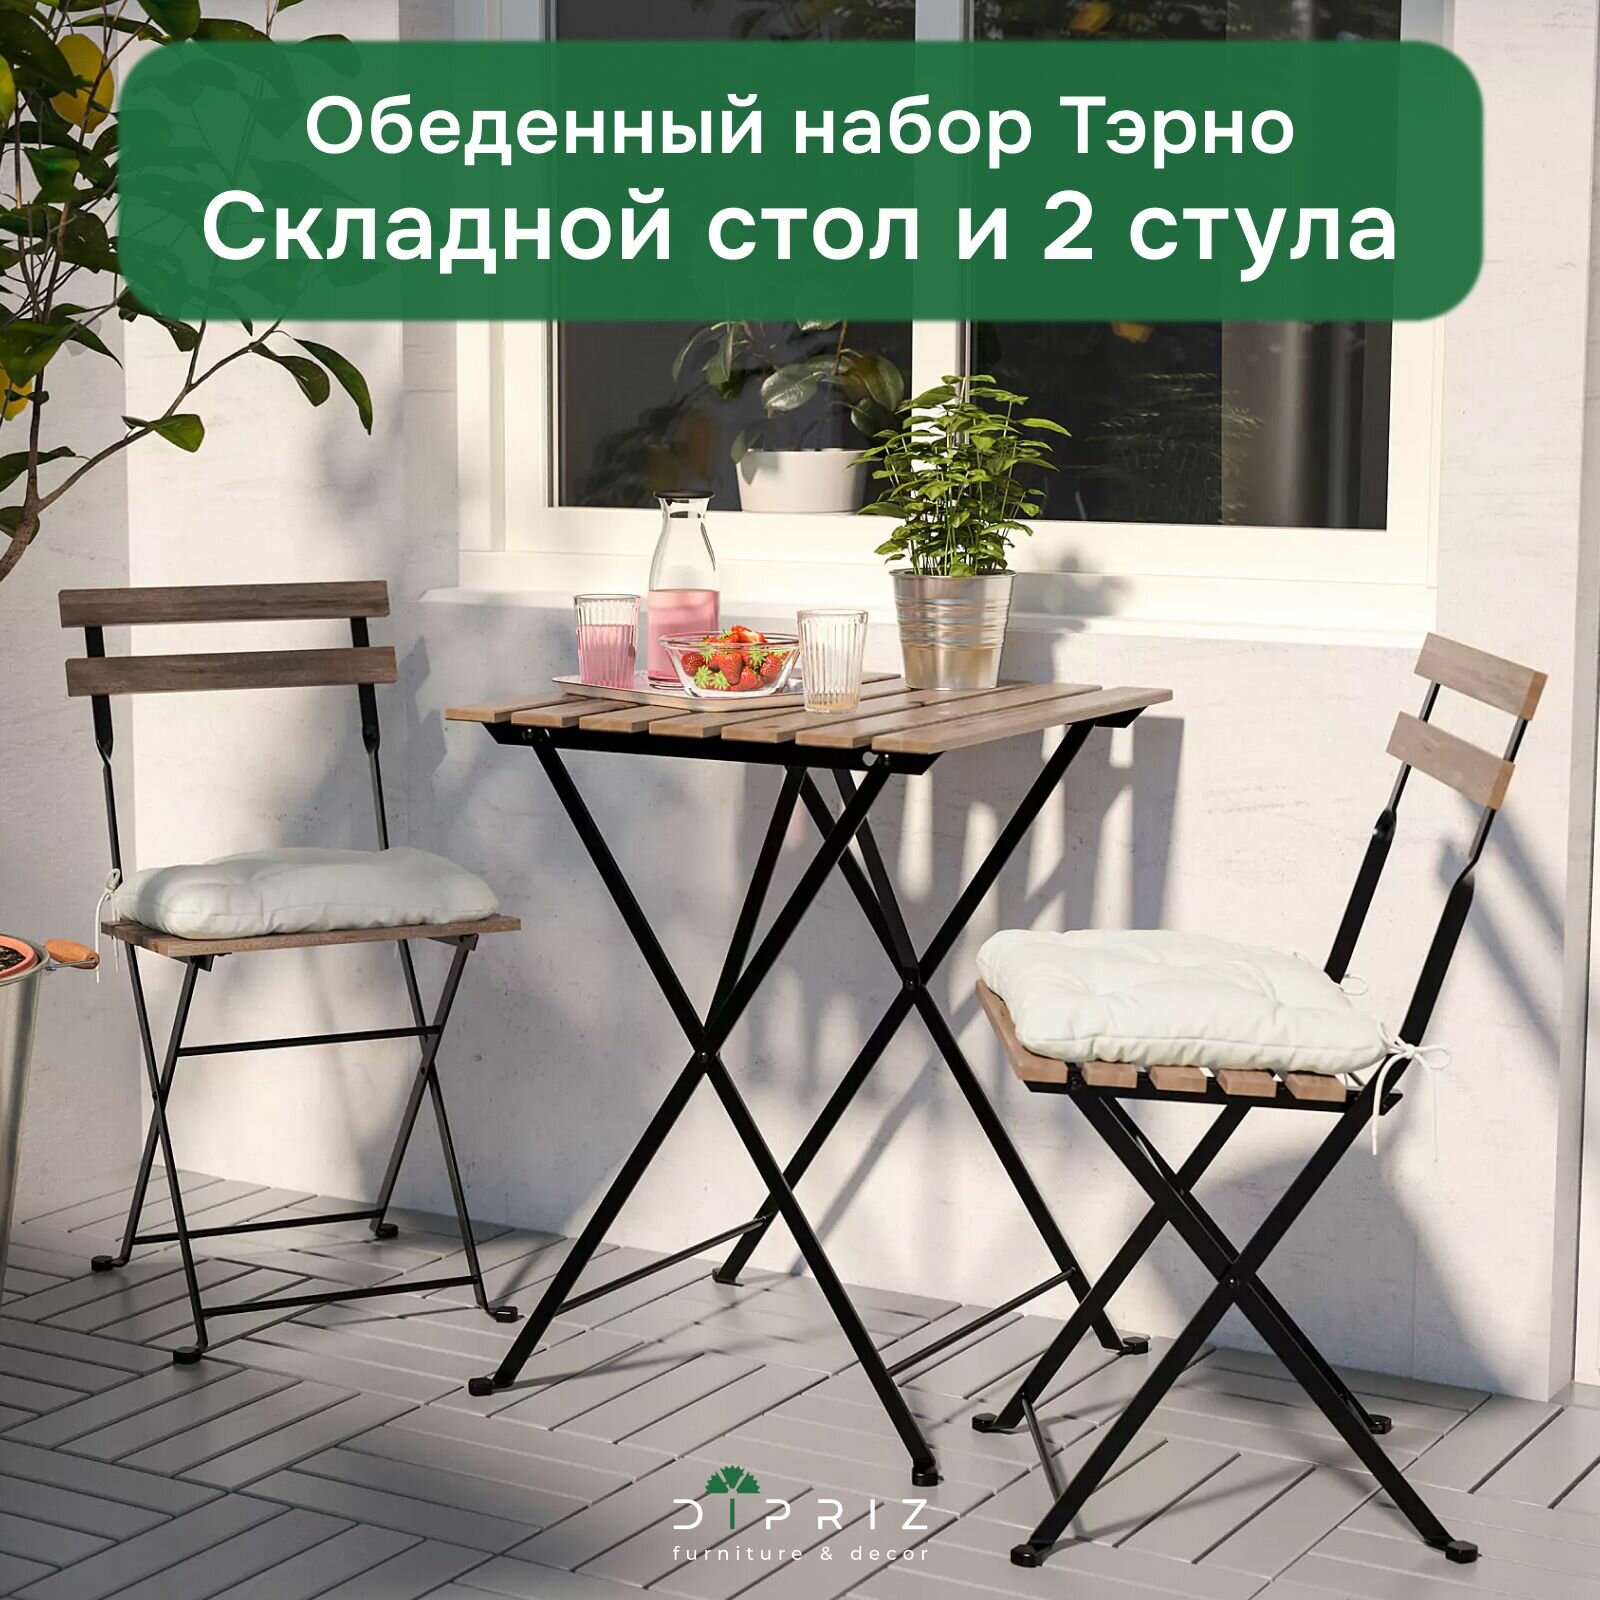 Комплект садовой мебели Тэрно из массива березы с нержавеющим стальным каркасом складной стол и 2 складных стула для улицы дачи кафе венге